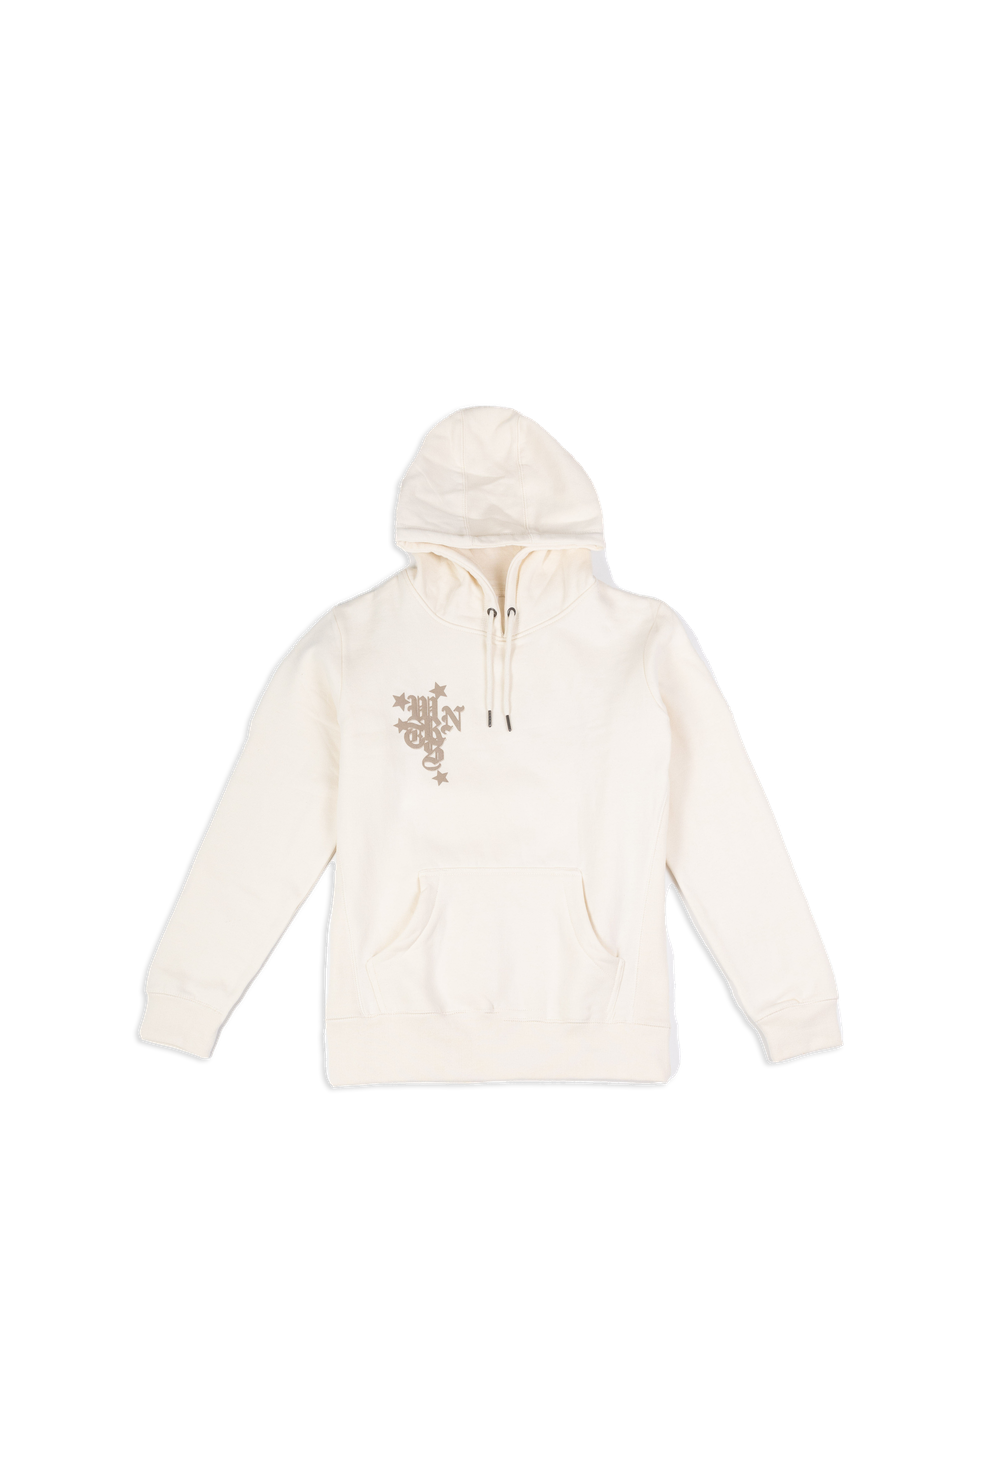 wrnts hoodie in cream